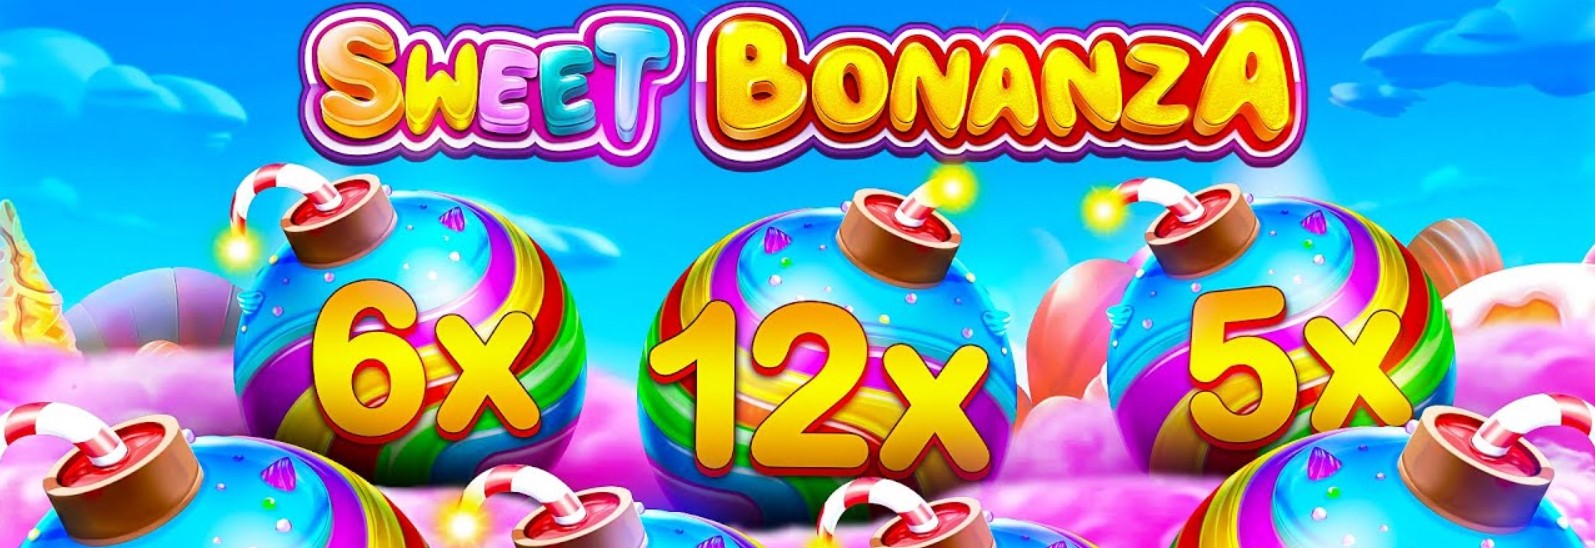  Sweet Bonanza casinos играть бесплатно и без регистрации